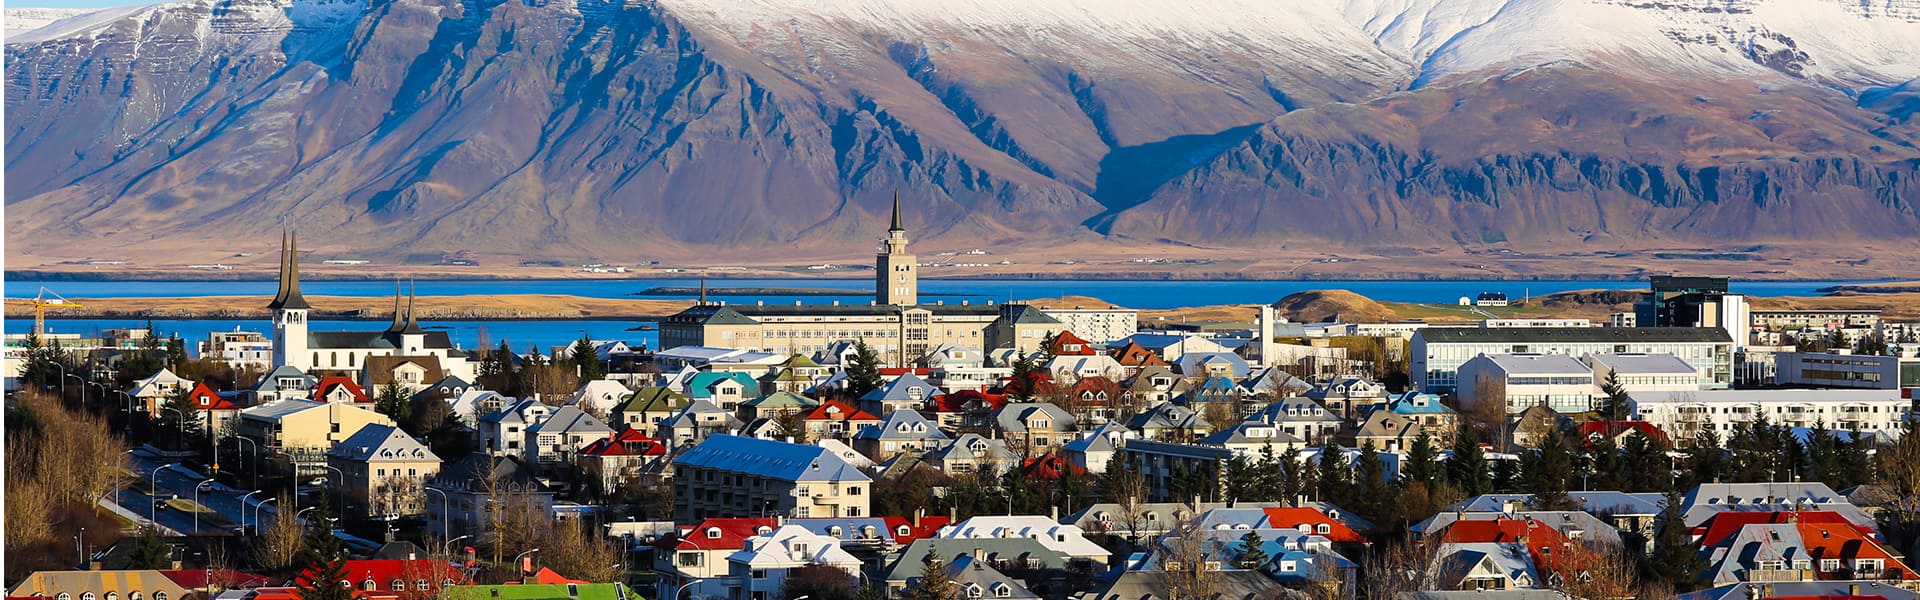 Passeio de cruzeiro em Reykjavik